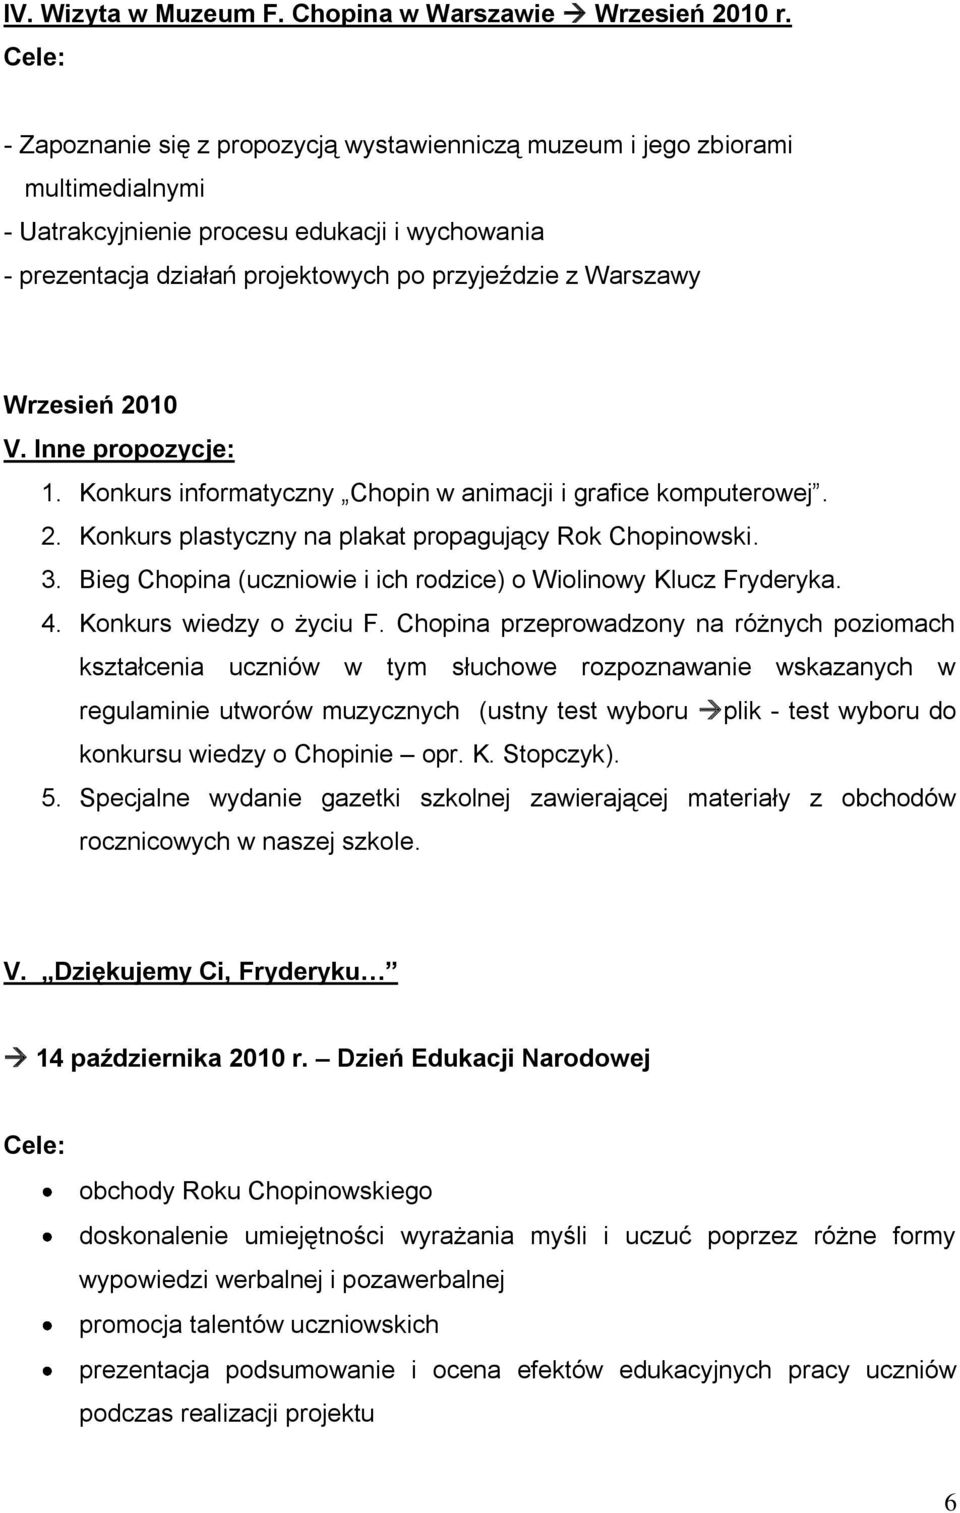 Wrzesień 2010 V. Inne propozycje: 1. Konkurs informatyczny Chopin w animacji i grafice komputerowej. 2. Konkurs plastyczny na plakat propagujący Rok Chopinowski. 3.